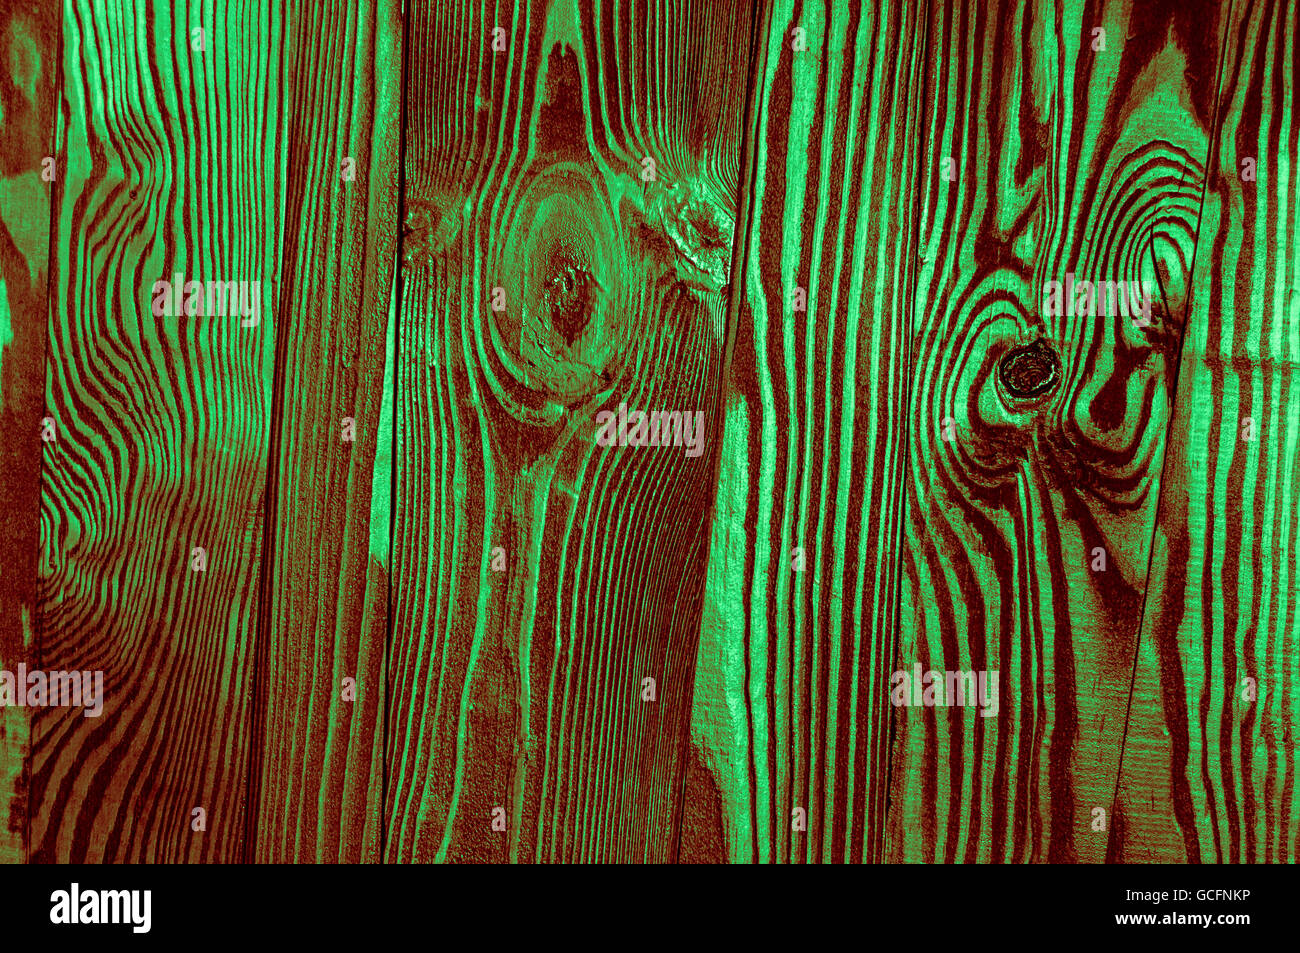 Perfekte Licht dunkelgrünen rötliche grünlich unregelmäßige alten dunklen hellen Holz Holz Oberflächenstruktur Hintergrund Stockfoto